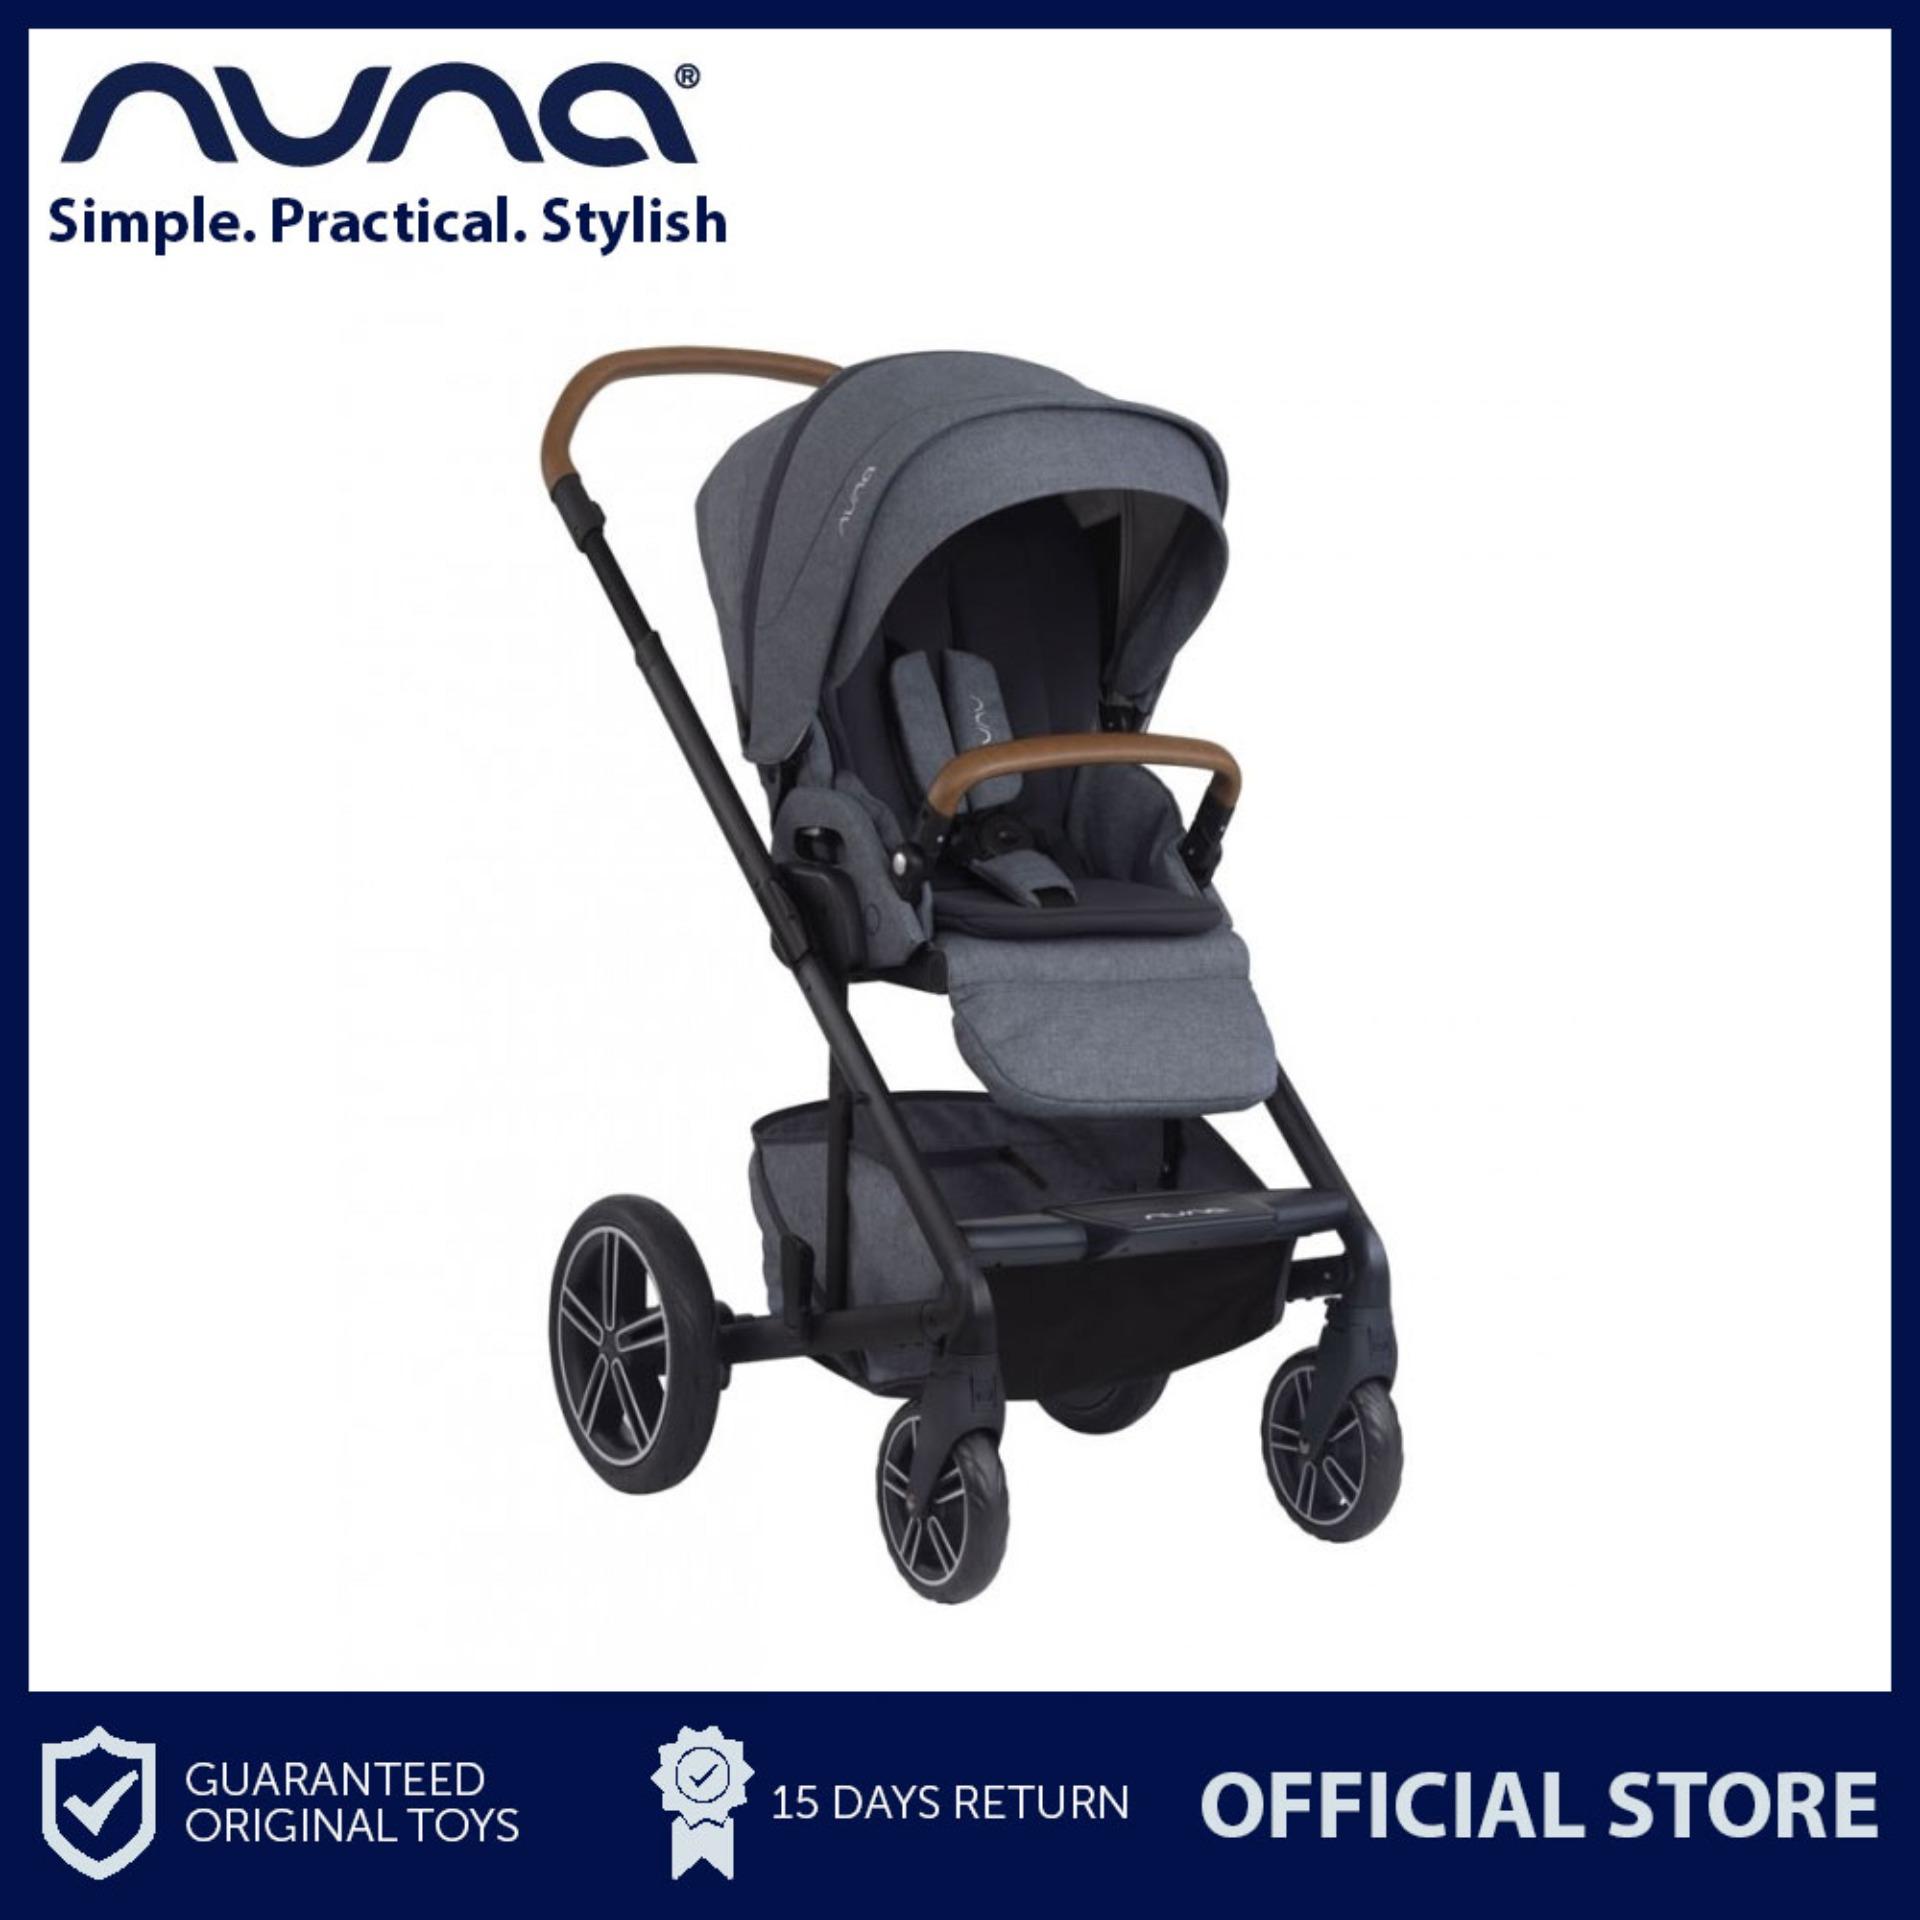 nuna stroller for sale